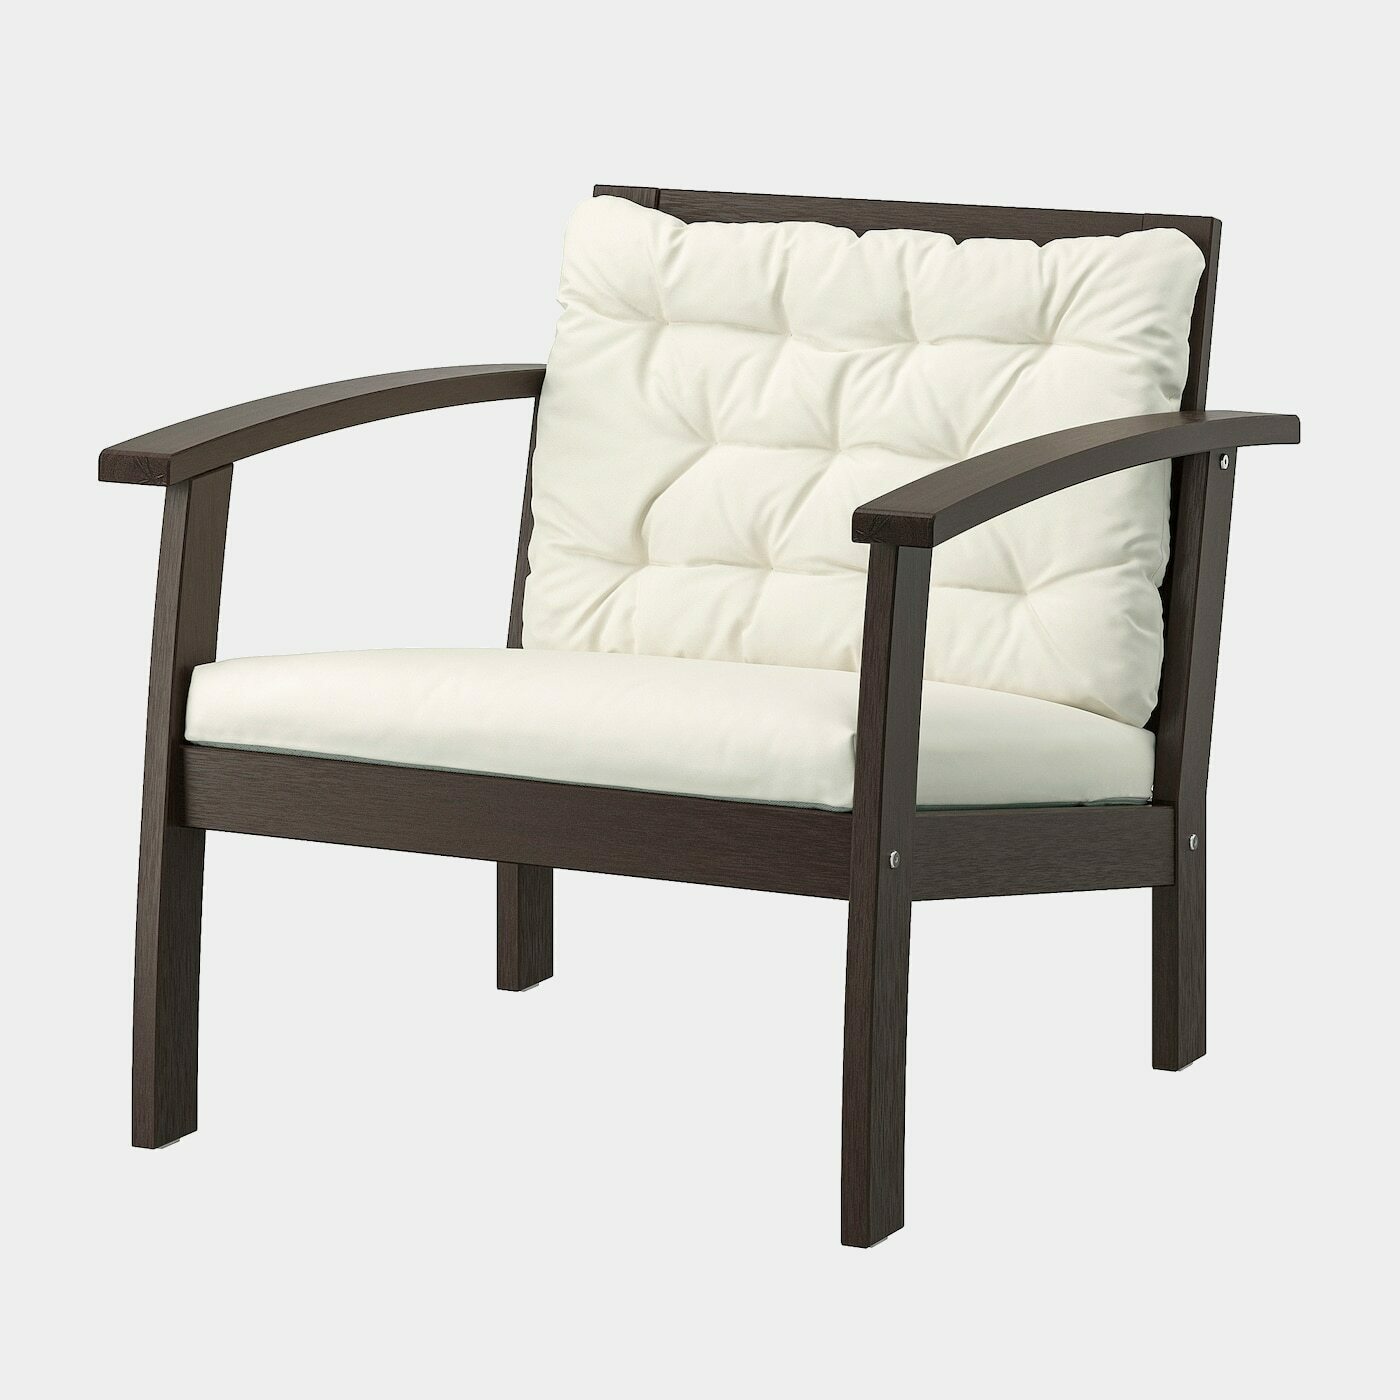 KLÖVEN Sessel/außen  -  - Möbel Ideen für dein Zuhause von Home Trends. Möbel Trends von Social Media Influencer für dein Skandi Zuhause.